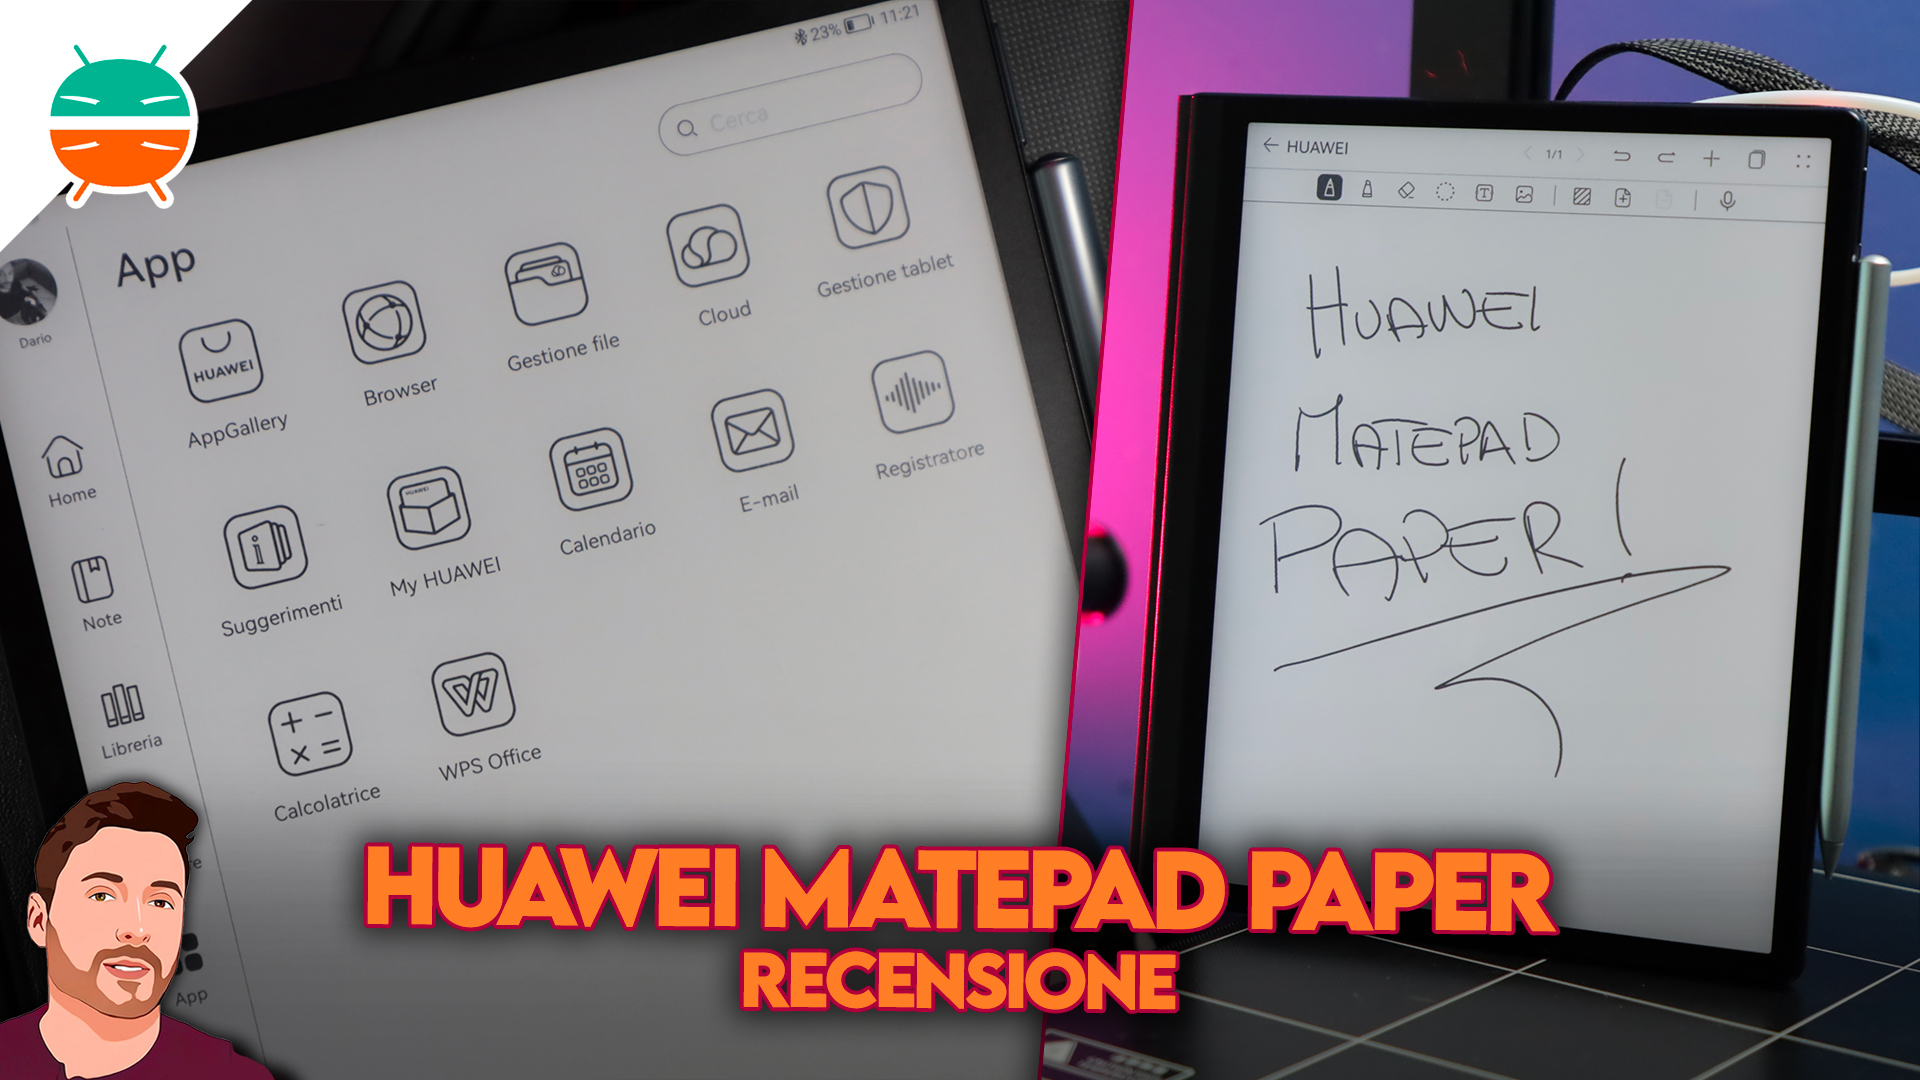 Huawei MatePad Pro, un ottimo tablet Android al giusto prezzo. La